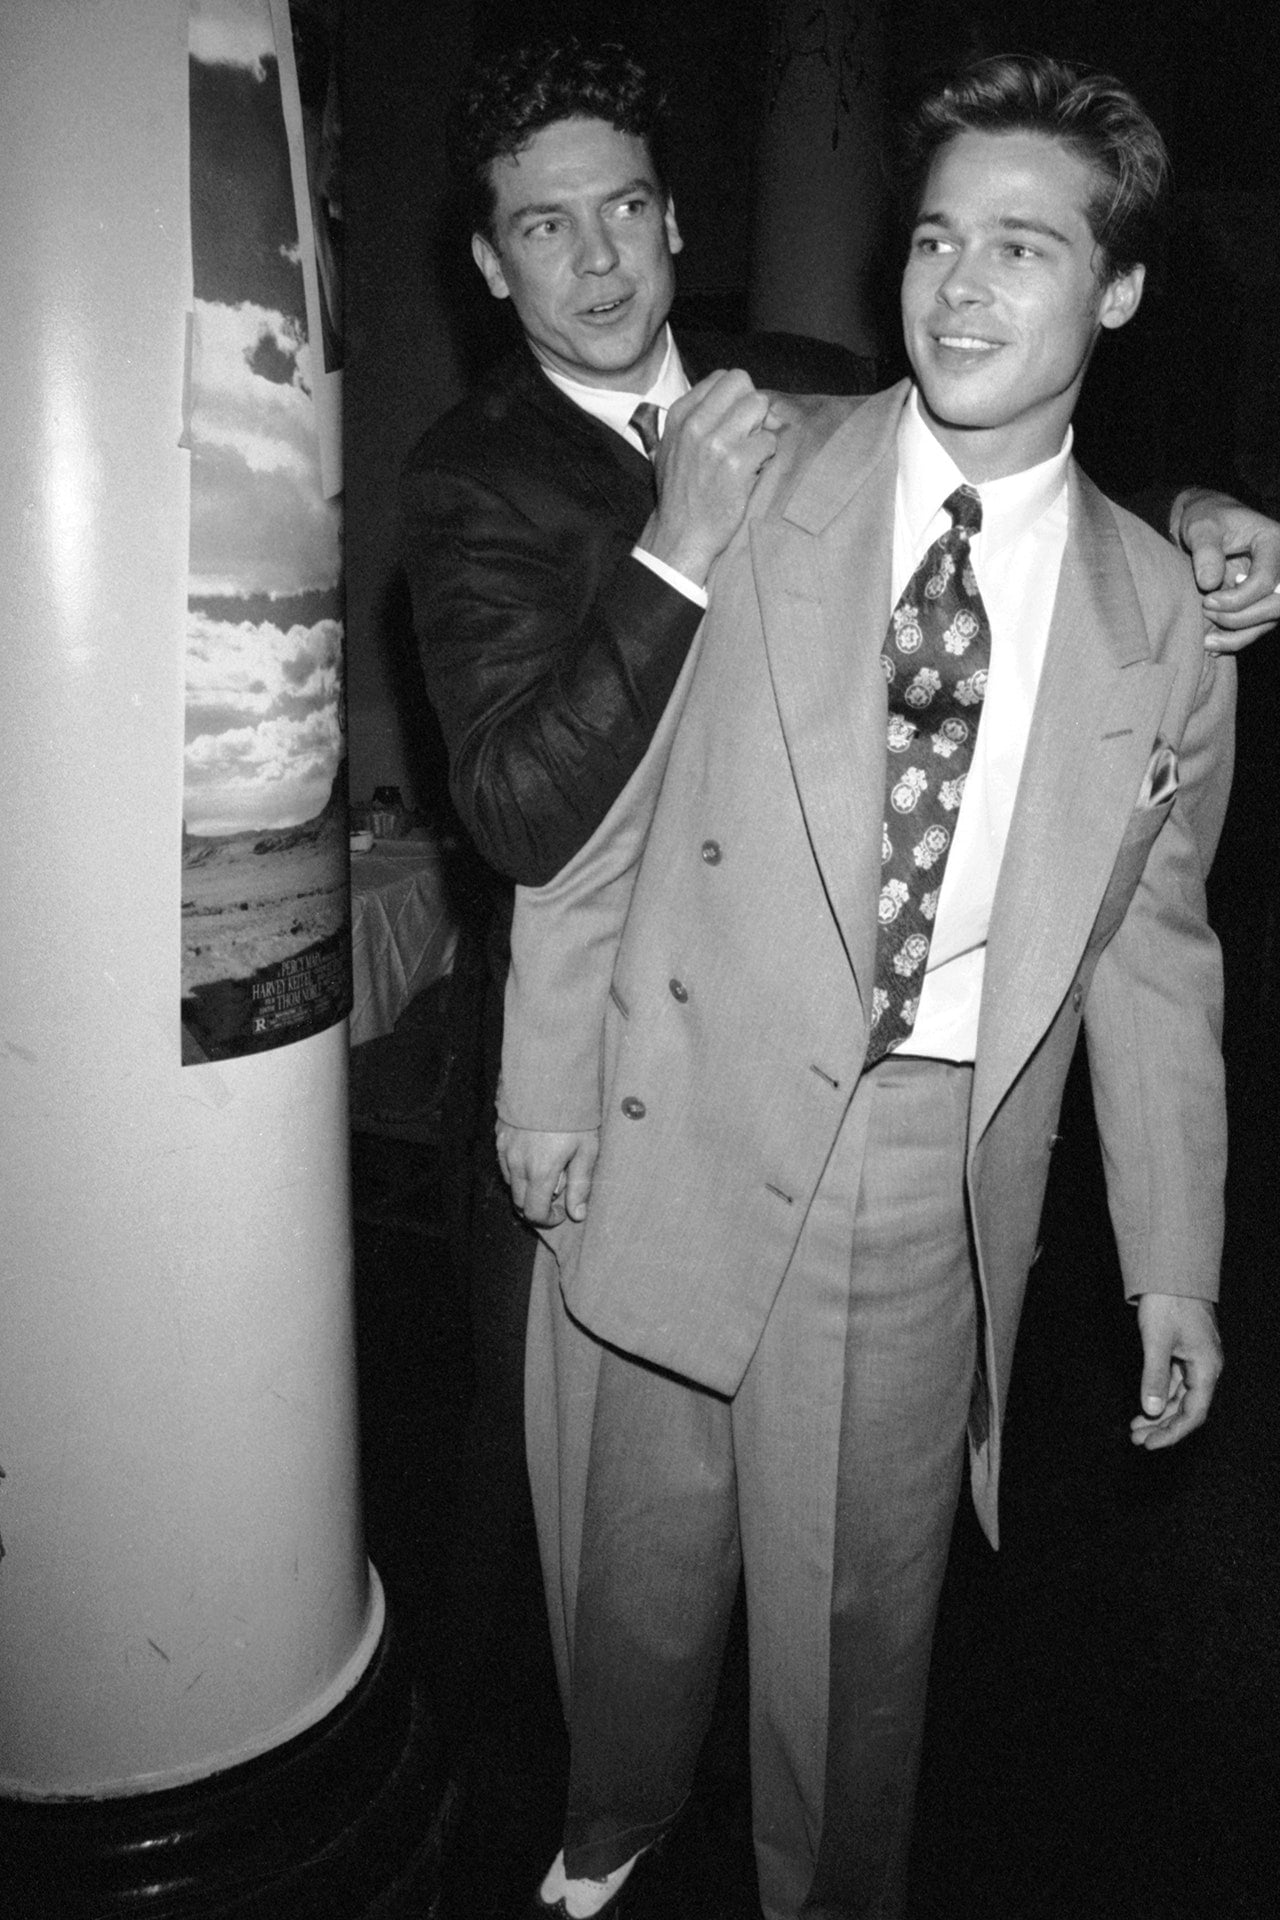  Bất cứ quý ông lịch lãm nào cũng cần phải có một bộ suit 2 hàng cúc ở trong tủ đồ. Brad Pitt trong những thập niên 90 cũng không ngoại lệ, nam diễn viên đã mặc bộ suit sáng màu và tinh tế khi lựa chọn cà vạt in hoa làm điểm nhấn chính.